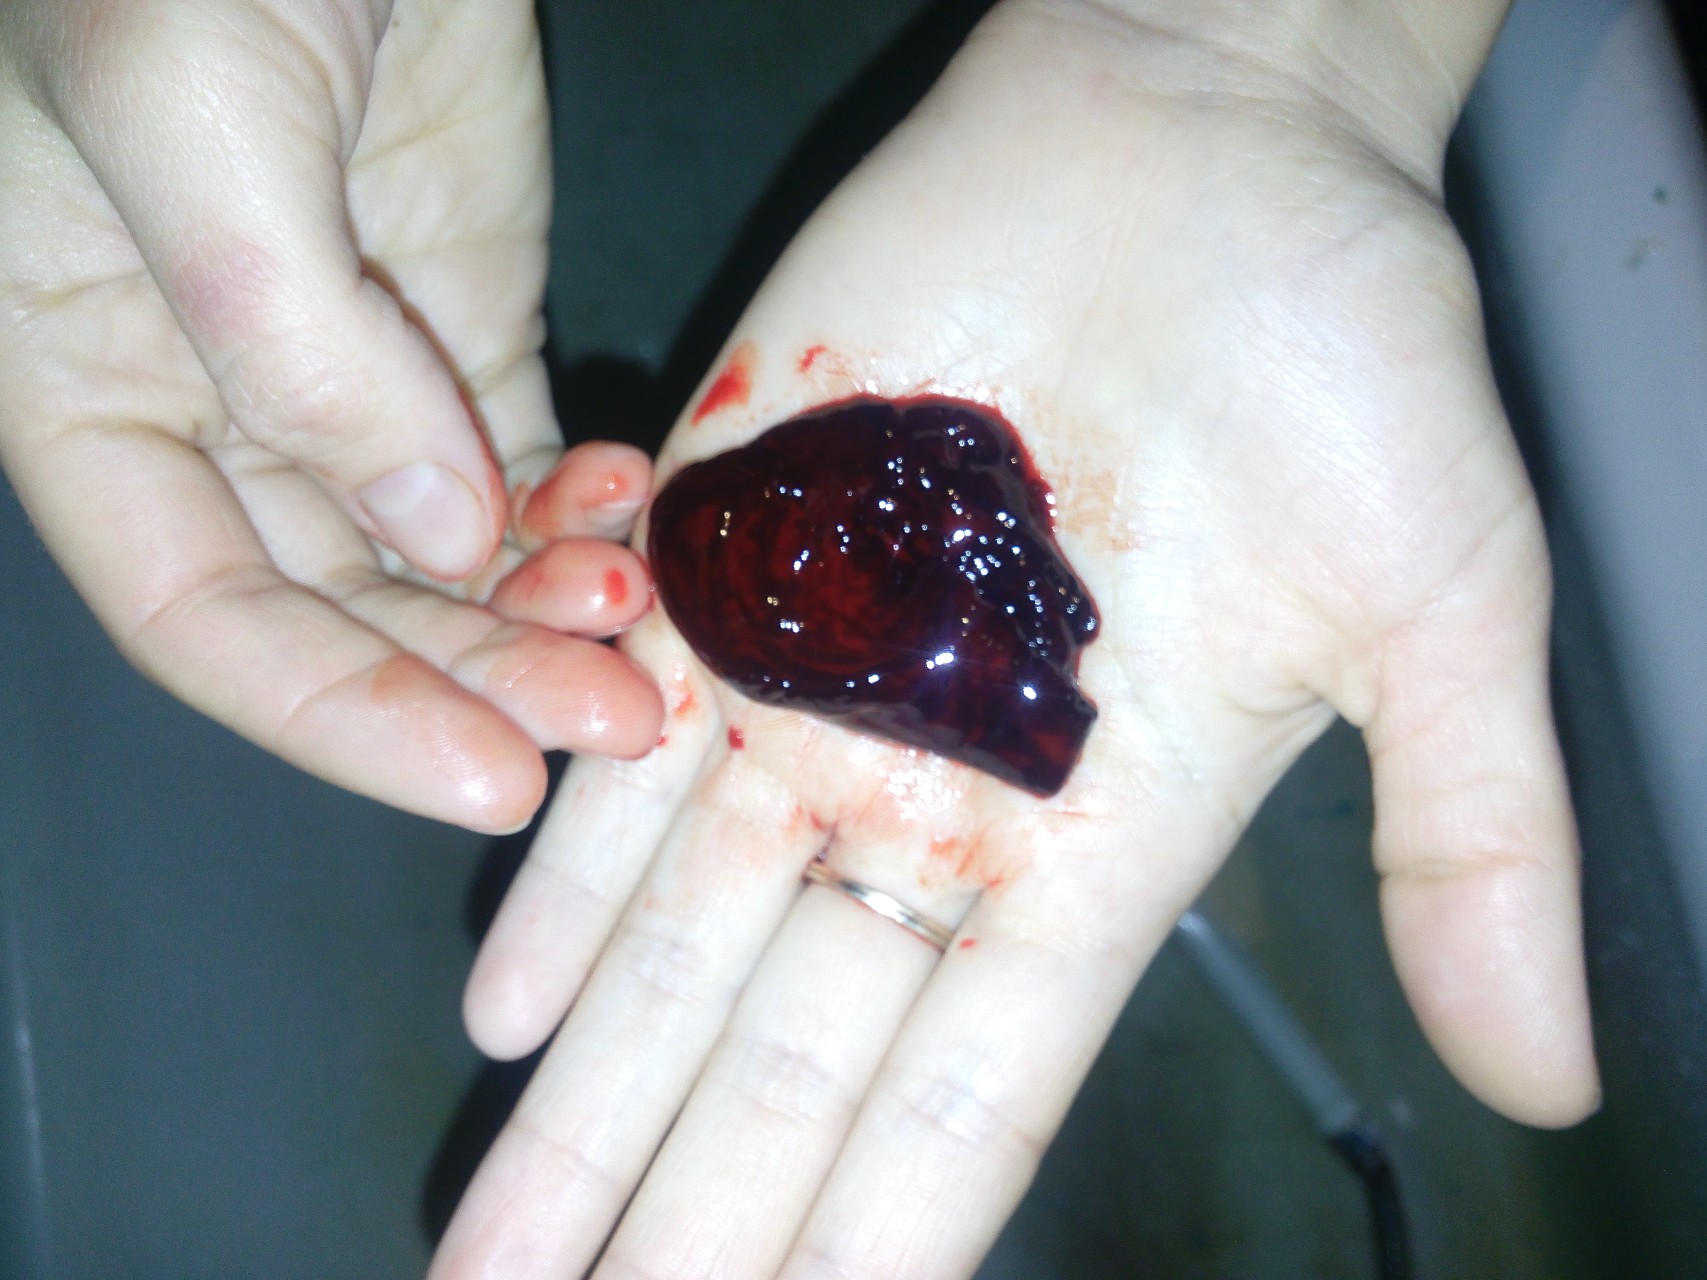 сгустки крови в сперме мужчин фото 33